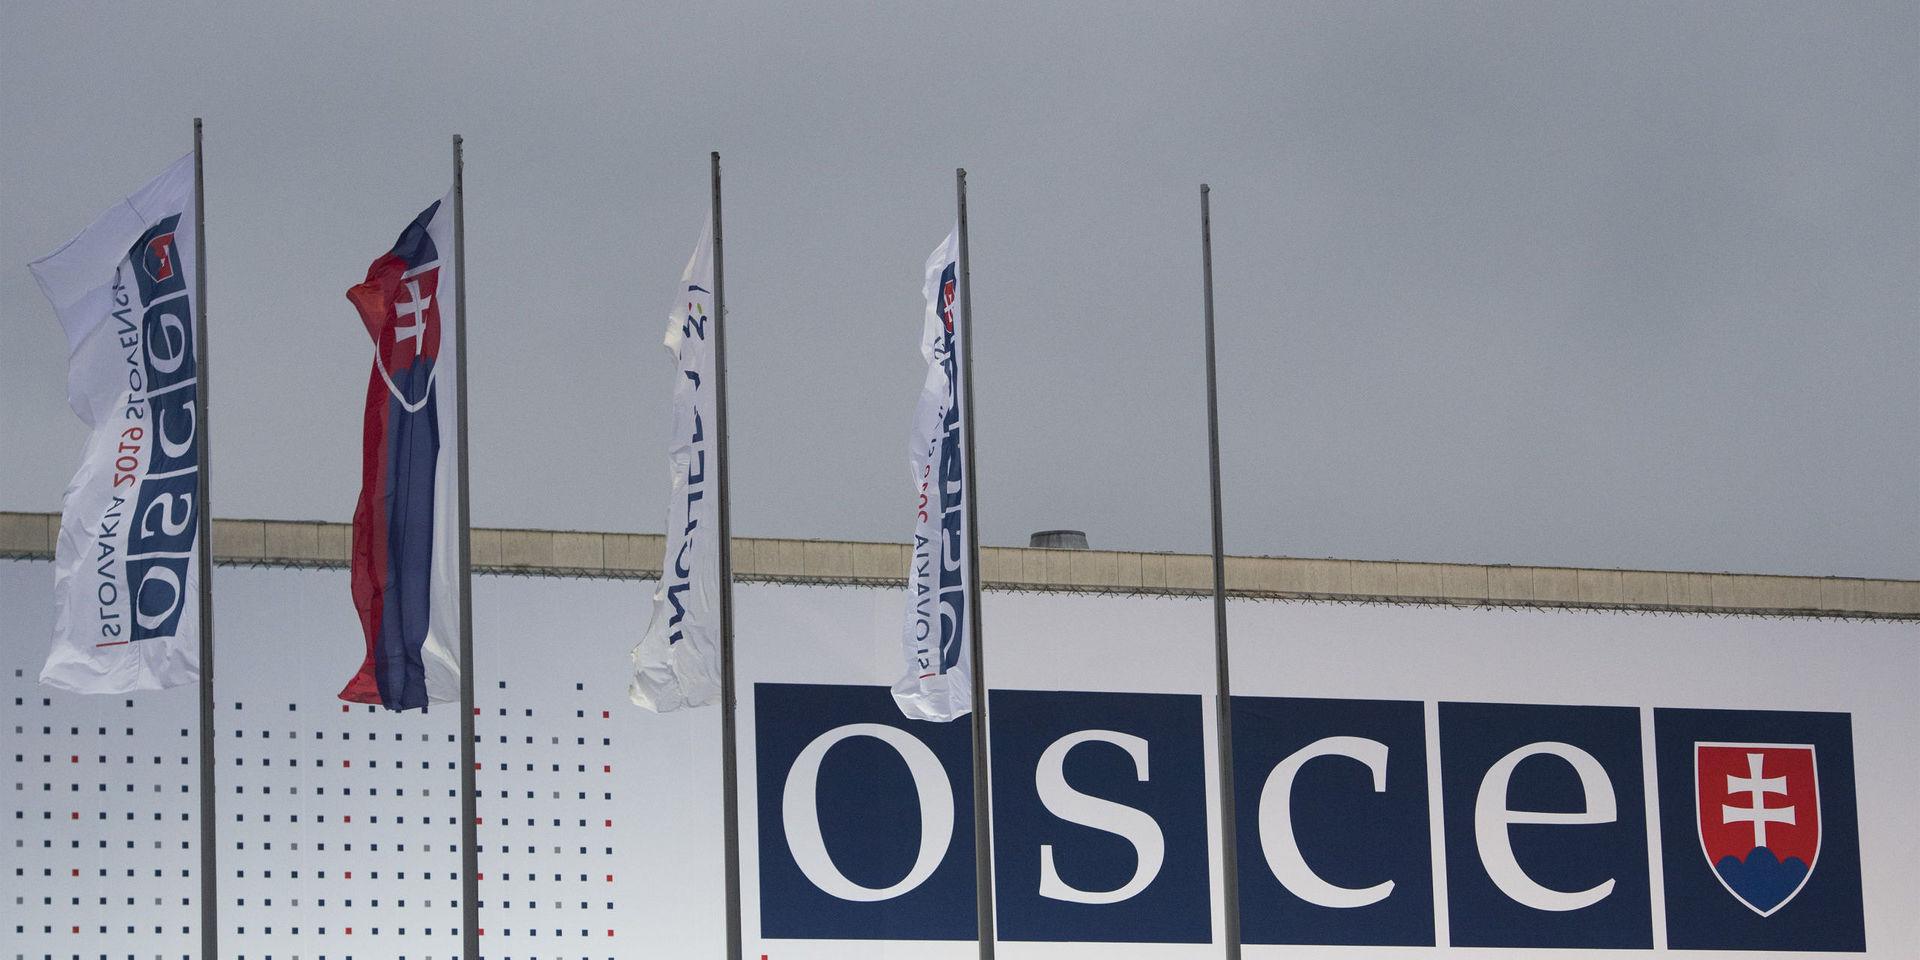 Utrikesministrarna i medlemsländerna inom Organisationen för säkerhet och samarbete i Europa (som förkortas OSCE på engelska) har träffats i Slovakiens huvudstad Bratislava. 